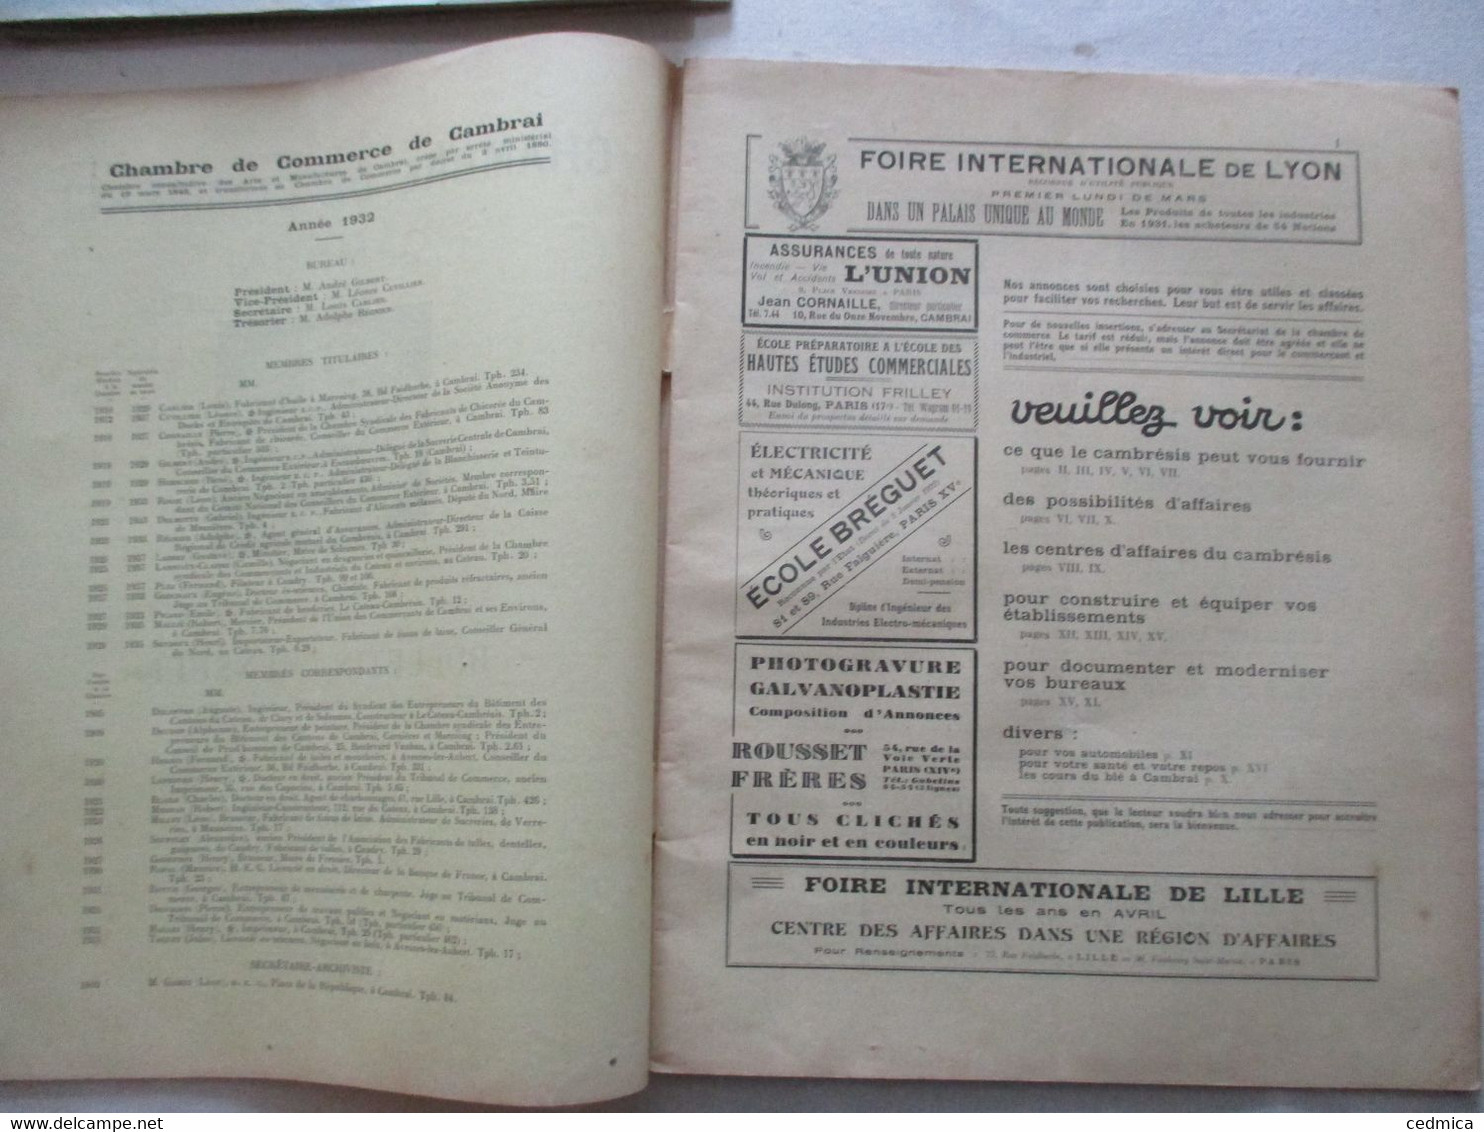 CHAMBRE DE COMMERCE DE CAMBRAI BULLETIN MENSUEL AVRIL 1932 N°131 PUBLICITES,SOMMAIRE - 1900 - 1949